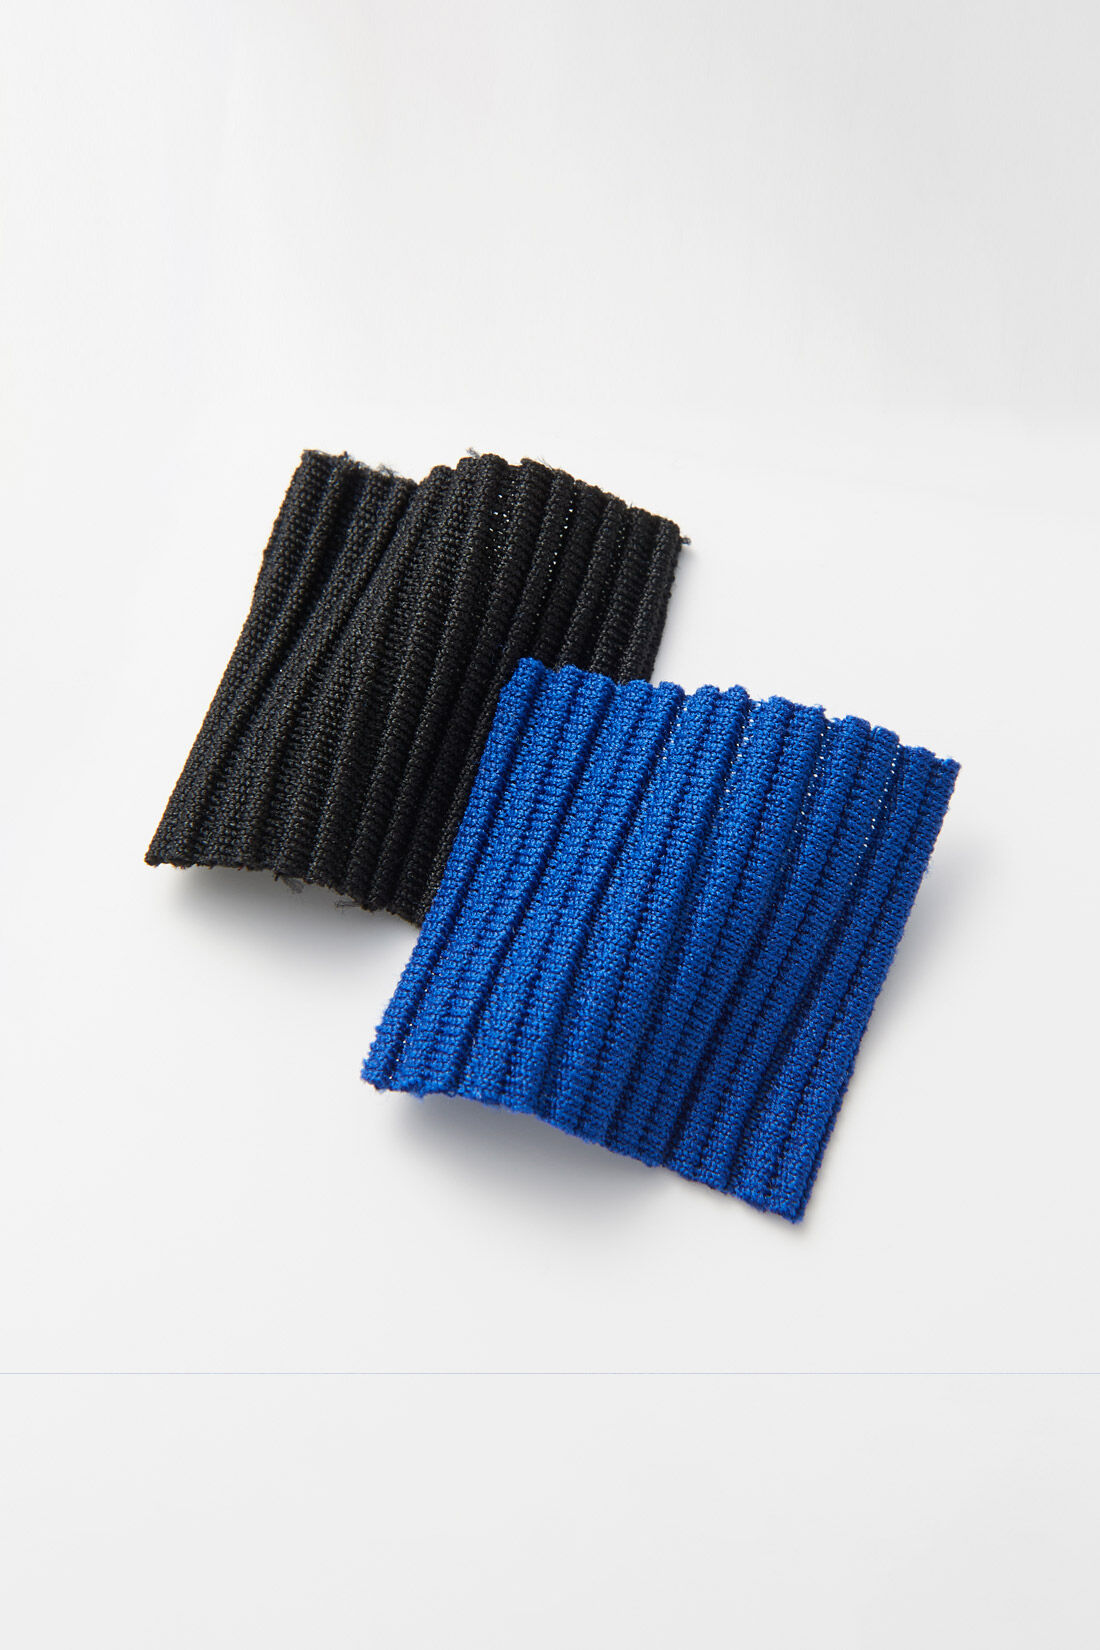 フェリシモMama|Moredde　リップルカットソー素材がらくちんきれいな　産前産後使えるIラインスカート〈ブラック〉|リブニットのような凹凸があるリップルカットソー素材。